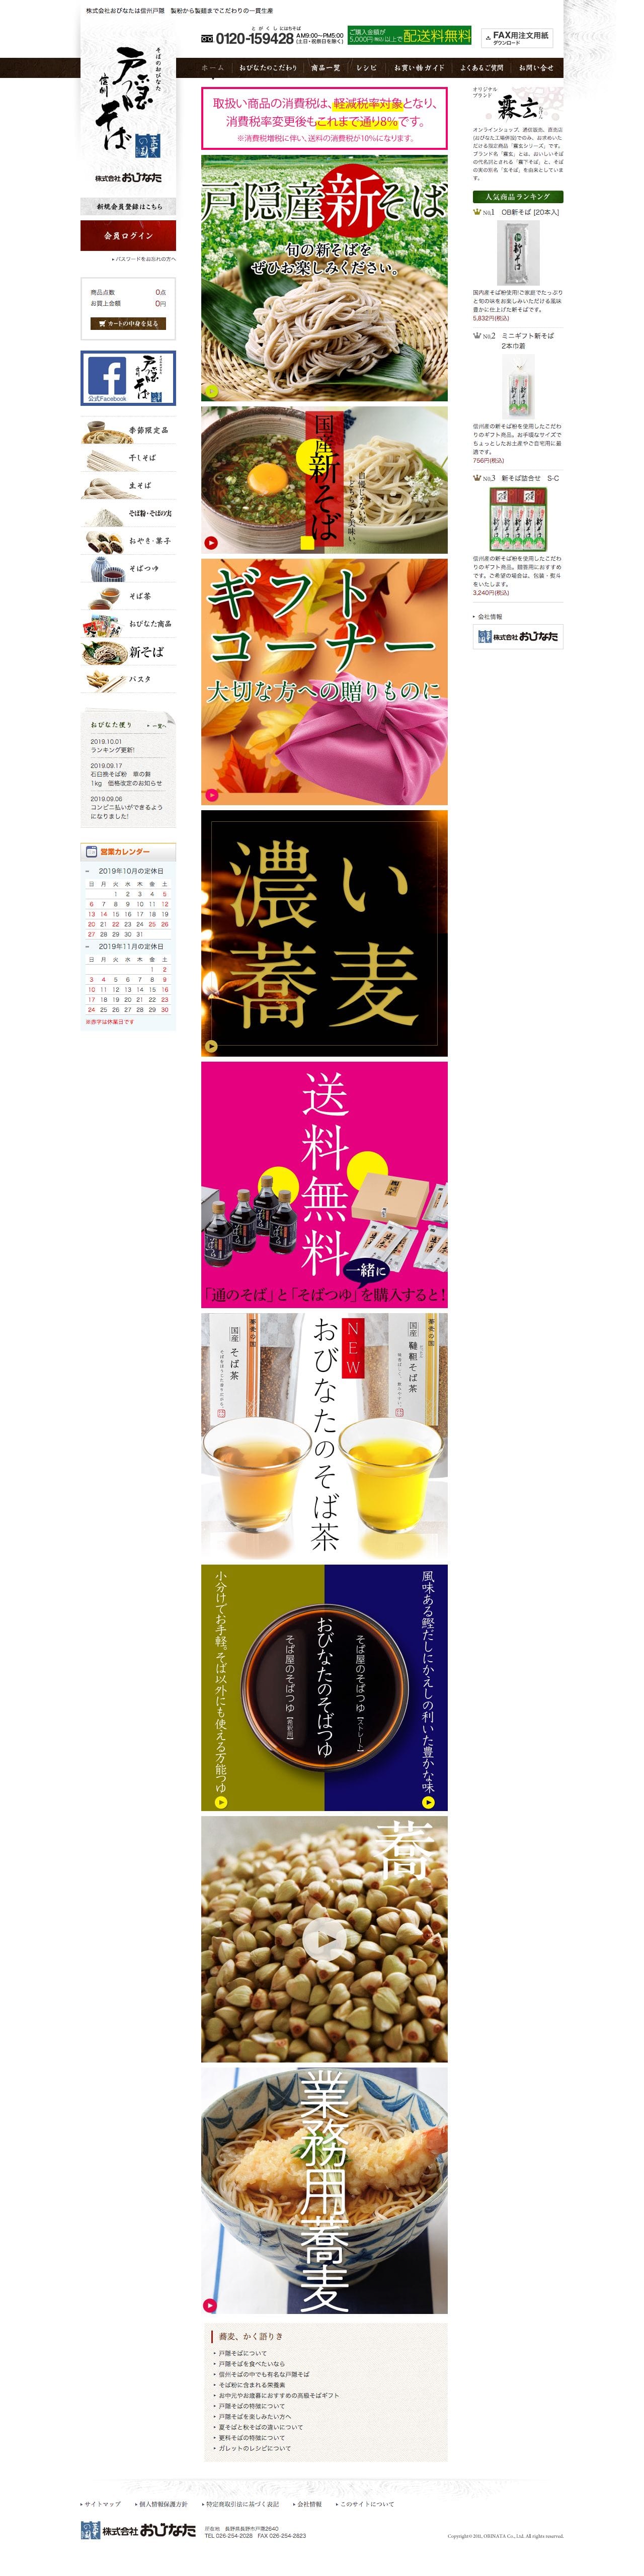 通販ショップ 信州戸隠 蕎麦の国 株式会社おびなたのスクリーンショット - トップページ